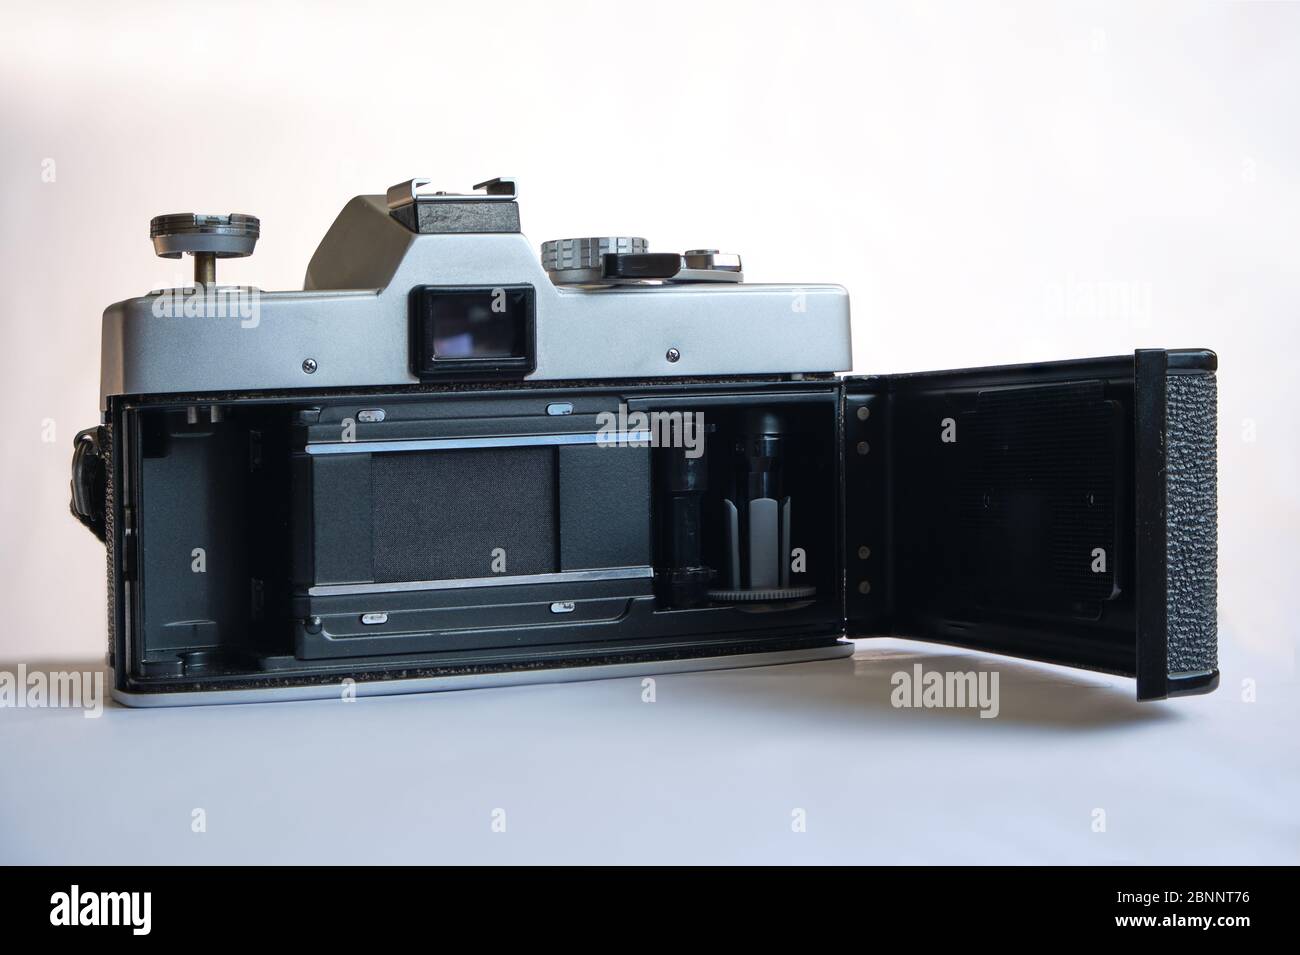 Minolta SR-T 101 telecamera analogica da 35 mm vintage, lanciata nel 1966. Vista posteriore. Foto Stock